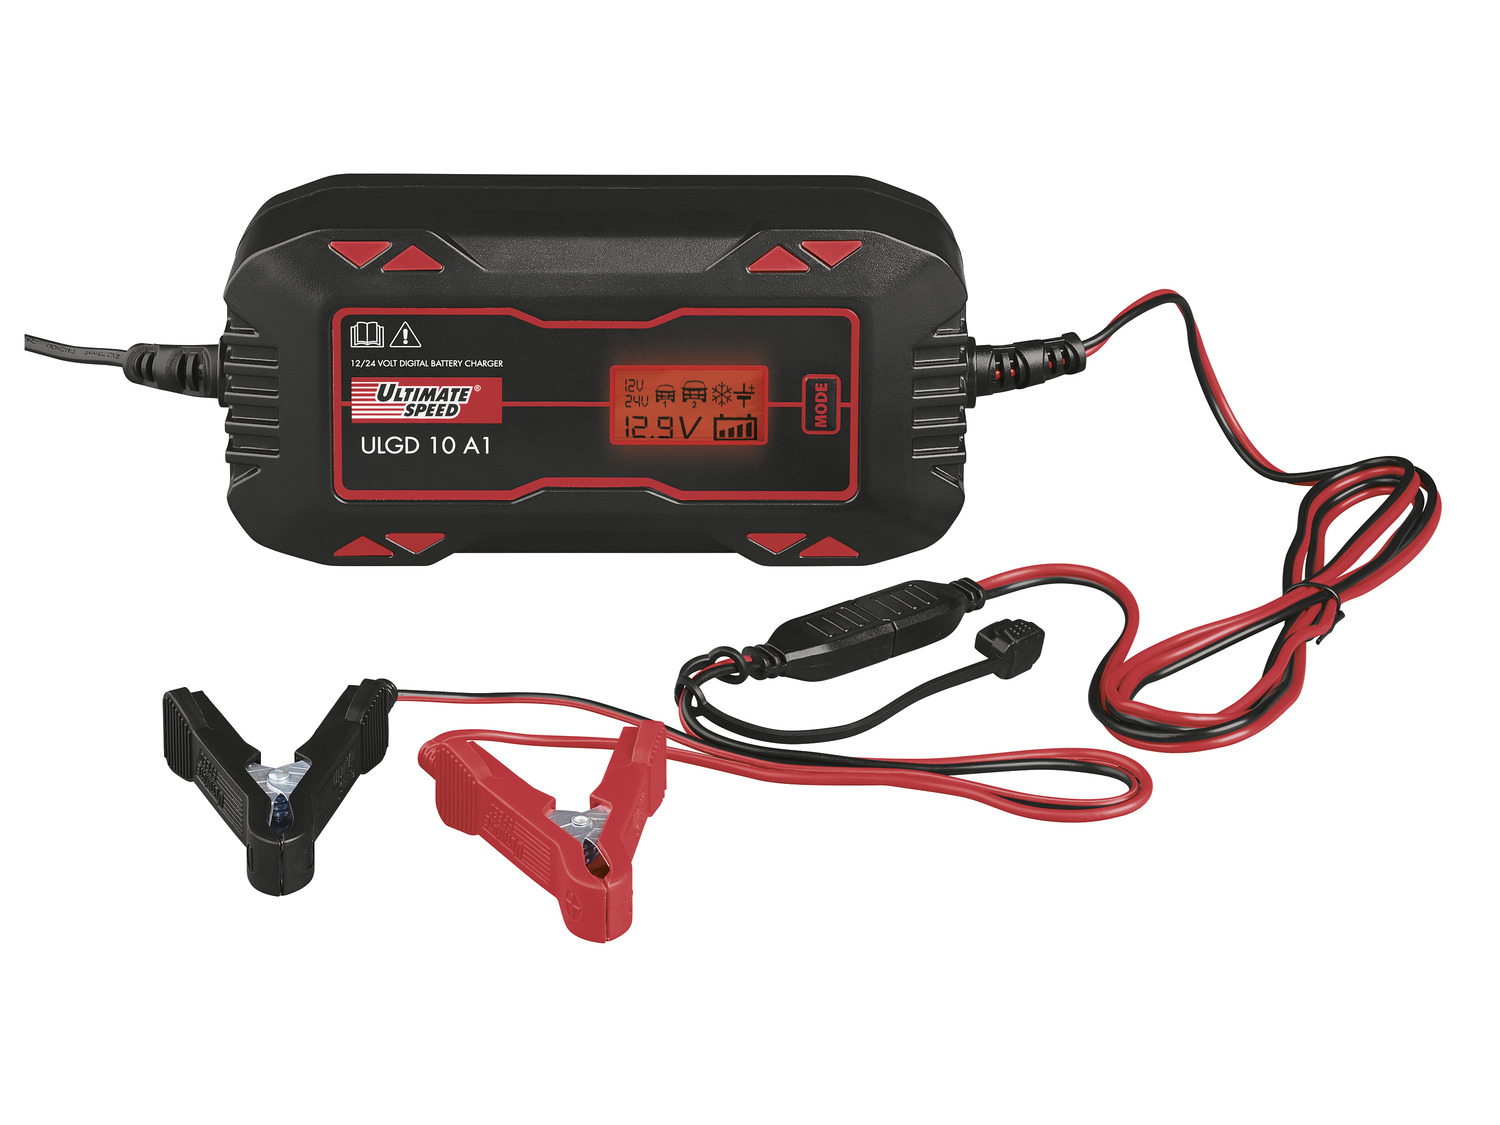 ULTIMATE SPEED® Chargeur de batterie pour véhicules motorisés »ULGD 10 A1«